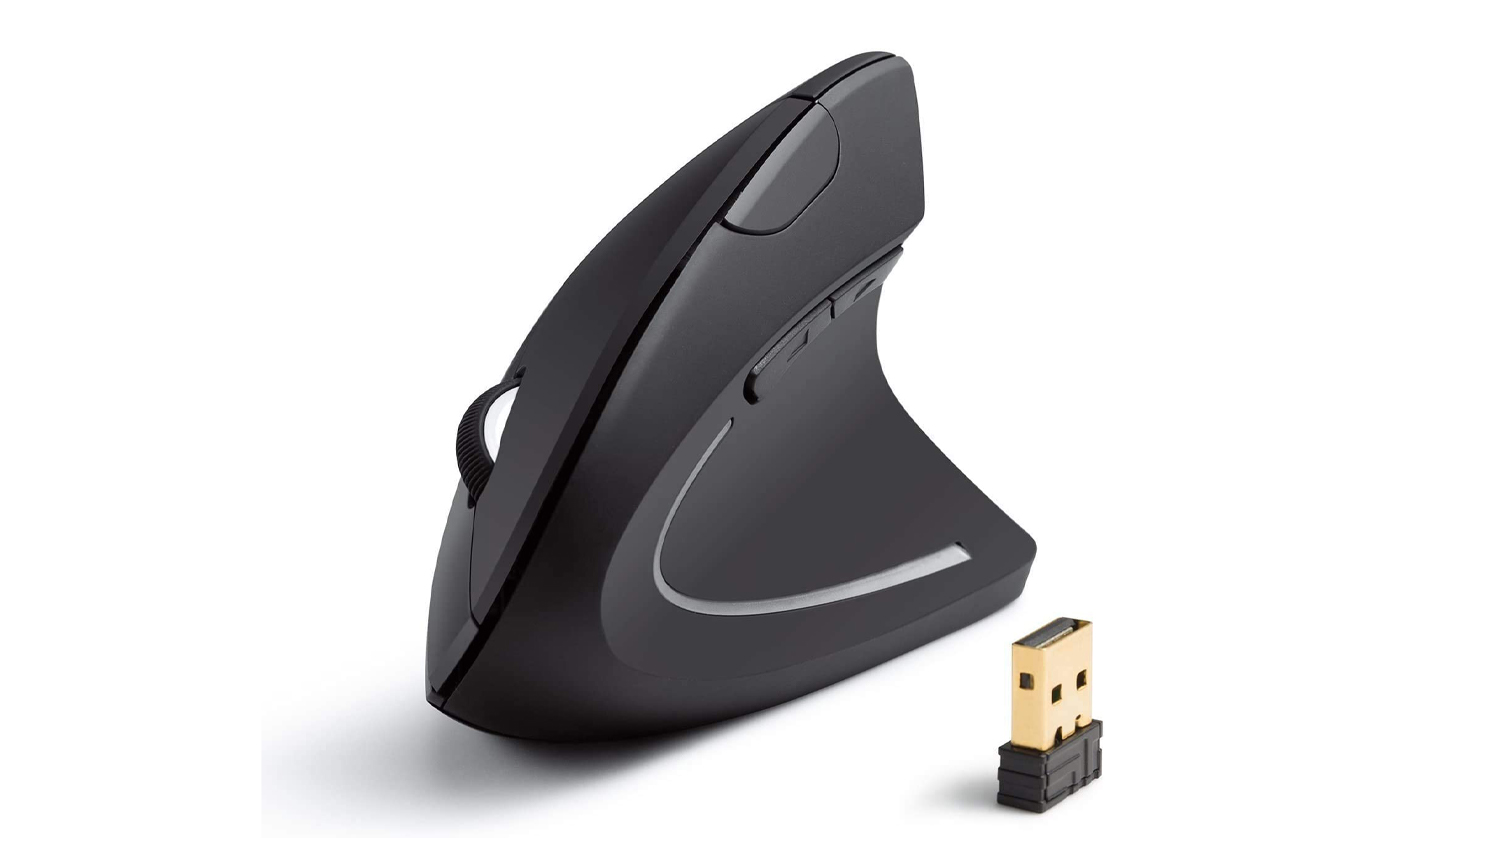 Best ergonomic mouse: Anker 2.4G Wireless Vertical Ergonomic